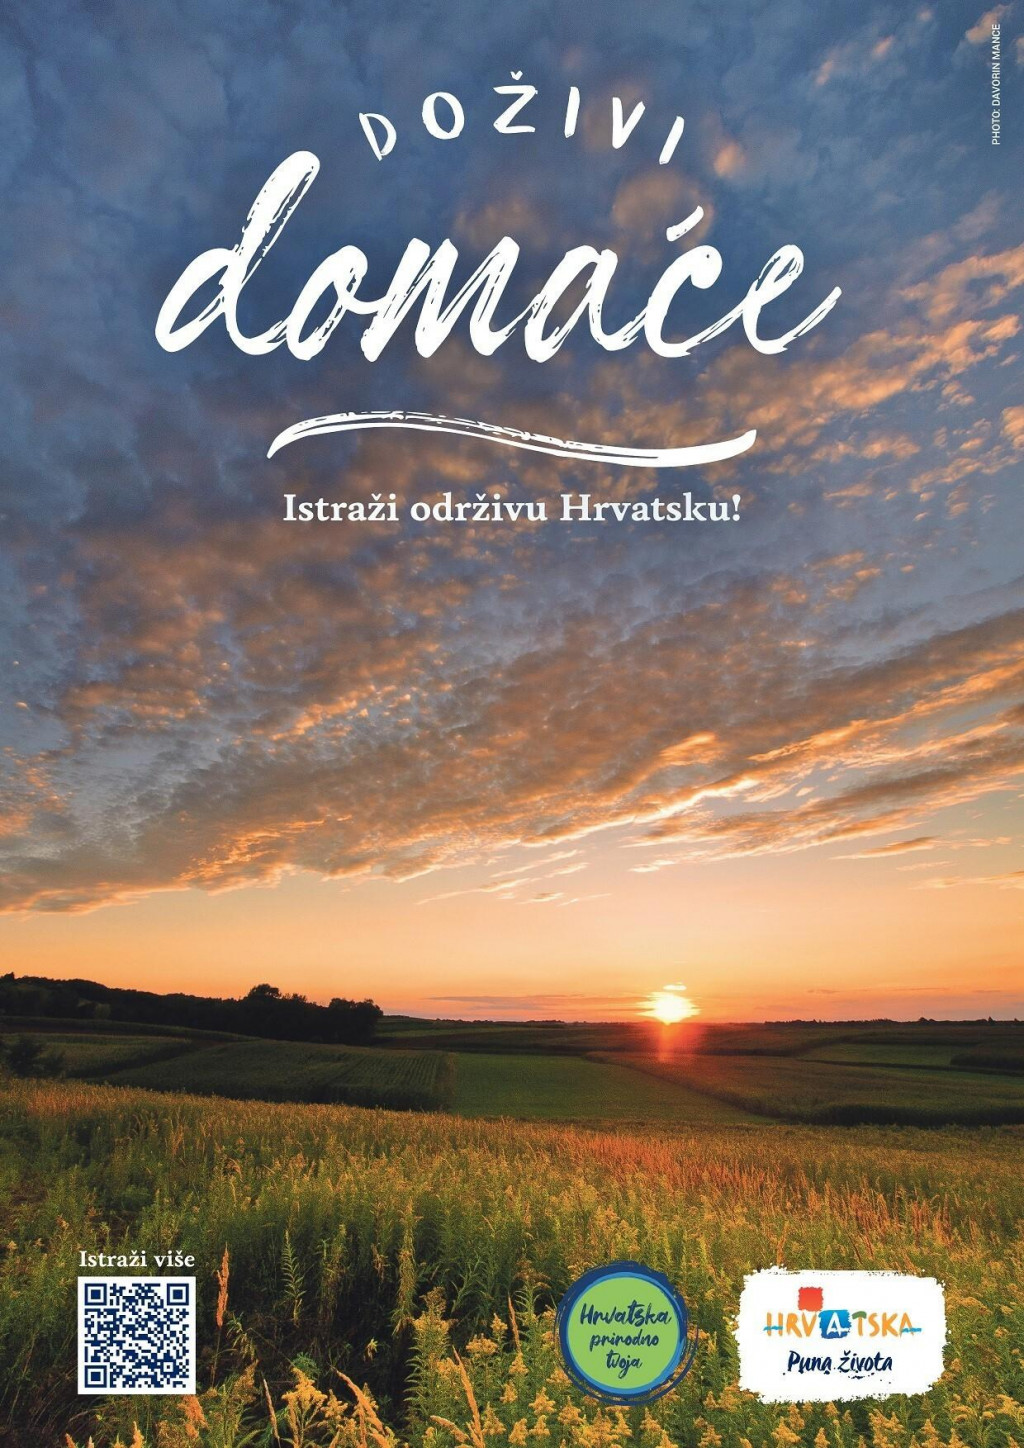 &lt;p&gt;Promocija održivog turizma kroz kampanju ”Doživi domaće. Istraži održivu Hrvatsku!”&lt;/p&gt;